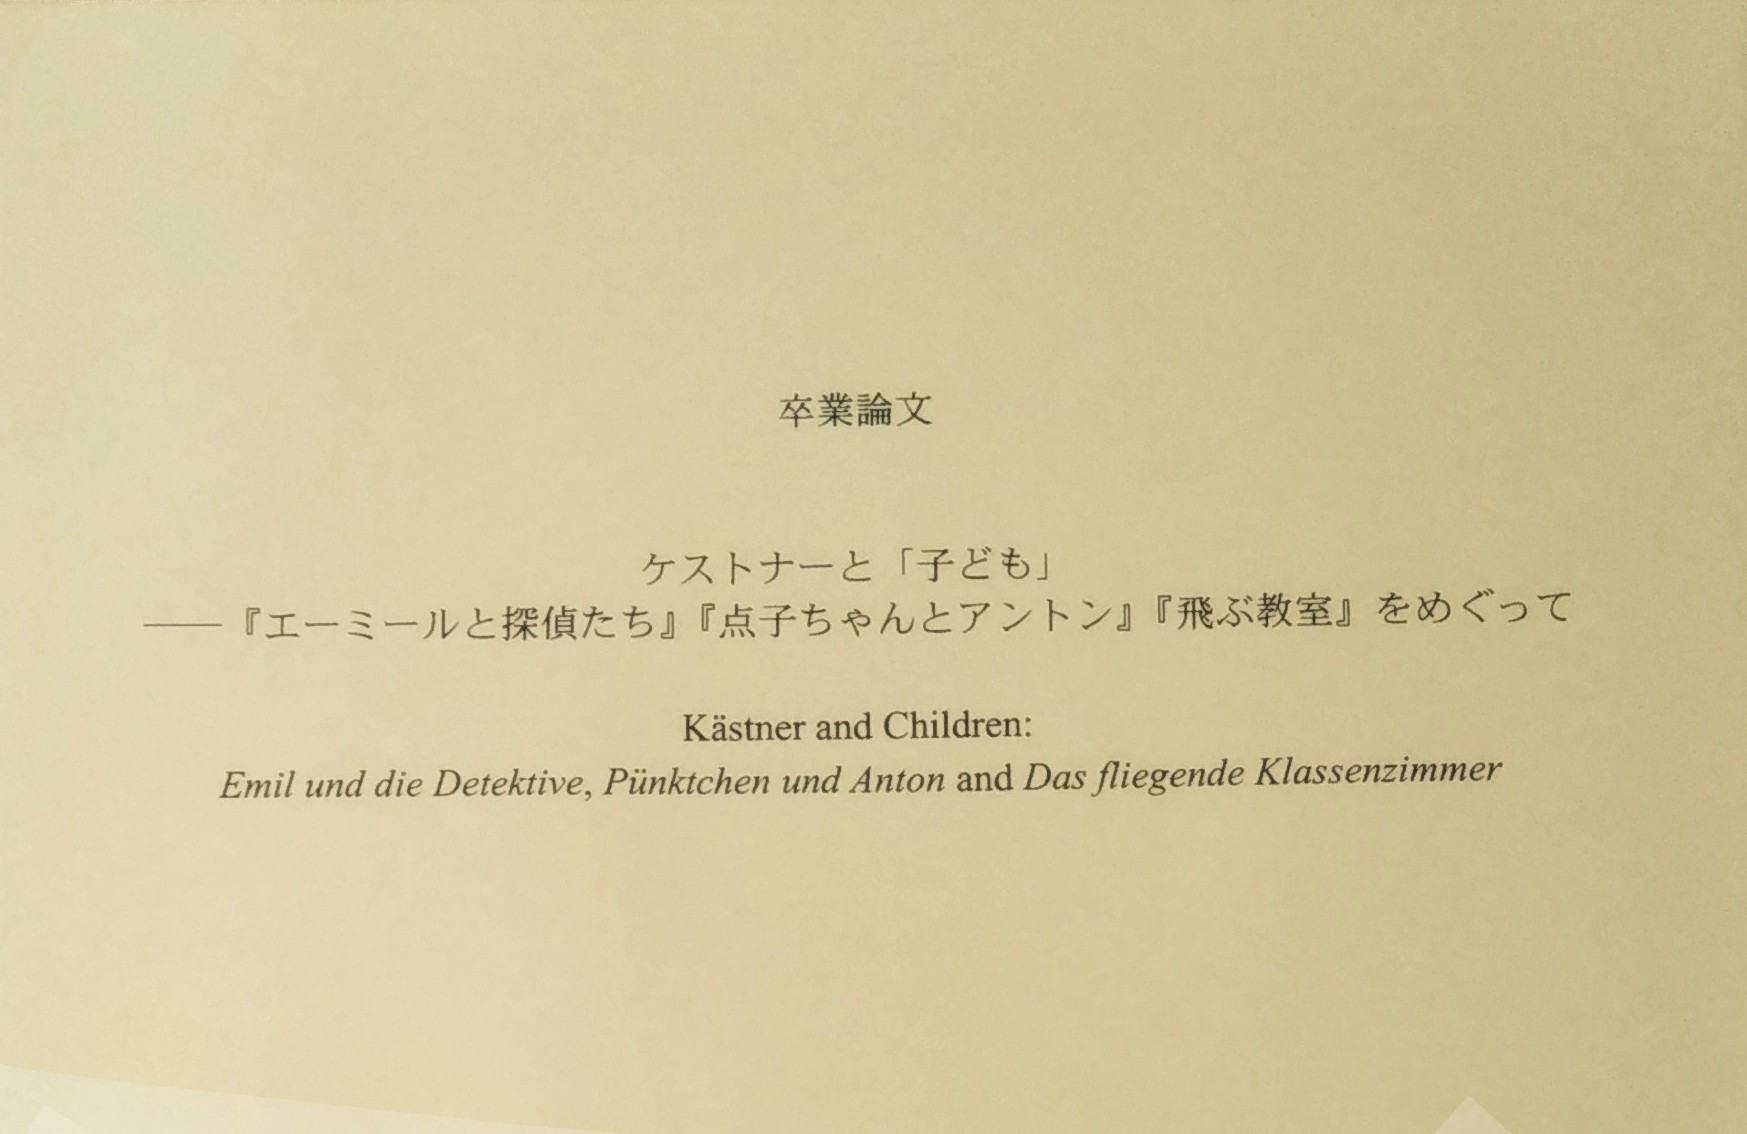 Deckblatt der japanischen Abschlussarbeit über Kästner